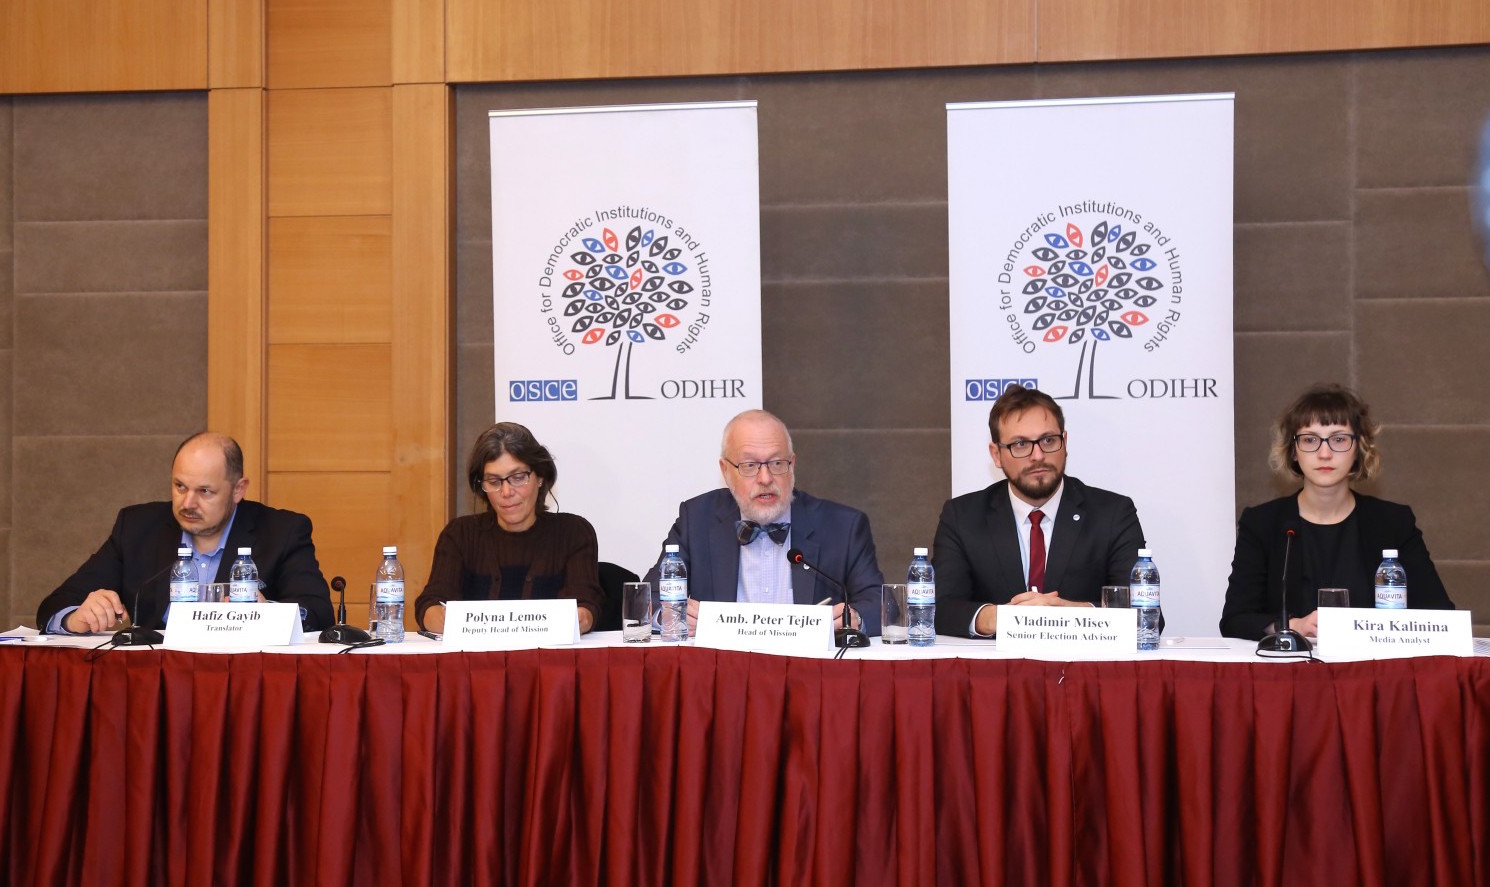 БДИПЧ ОБСЕ открыла миссию по наблюдению за выборами в Азербайджане